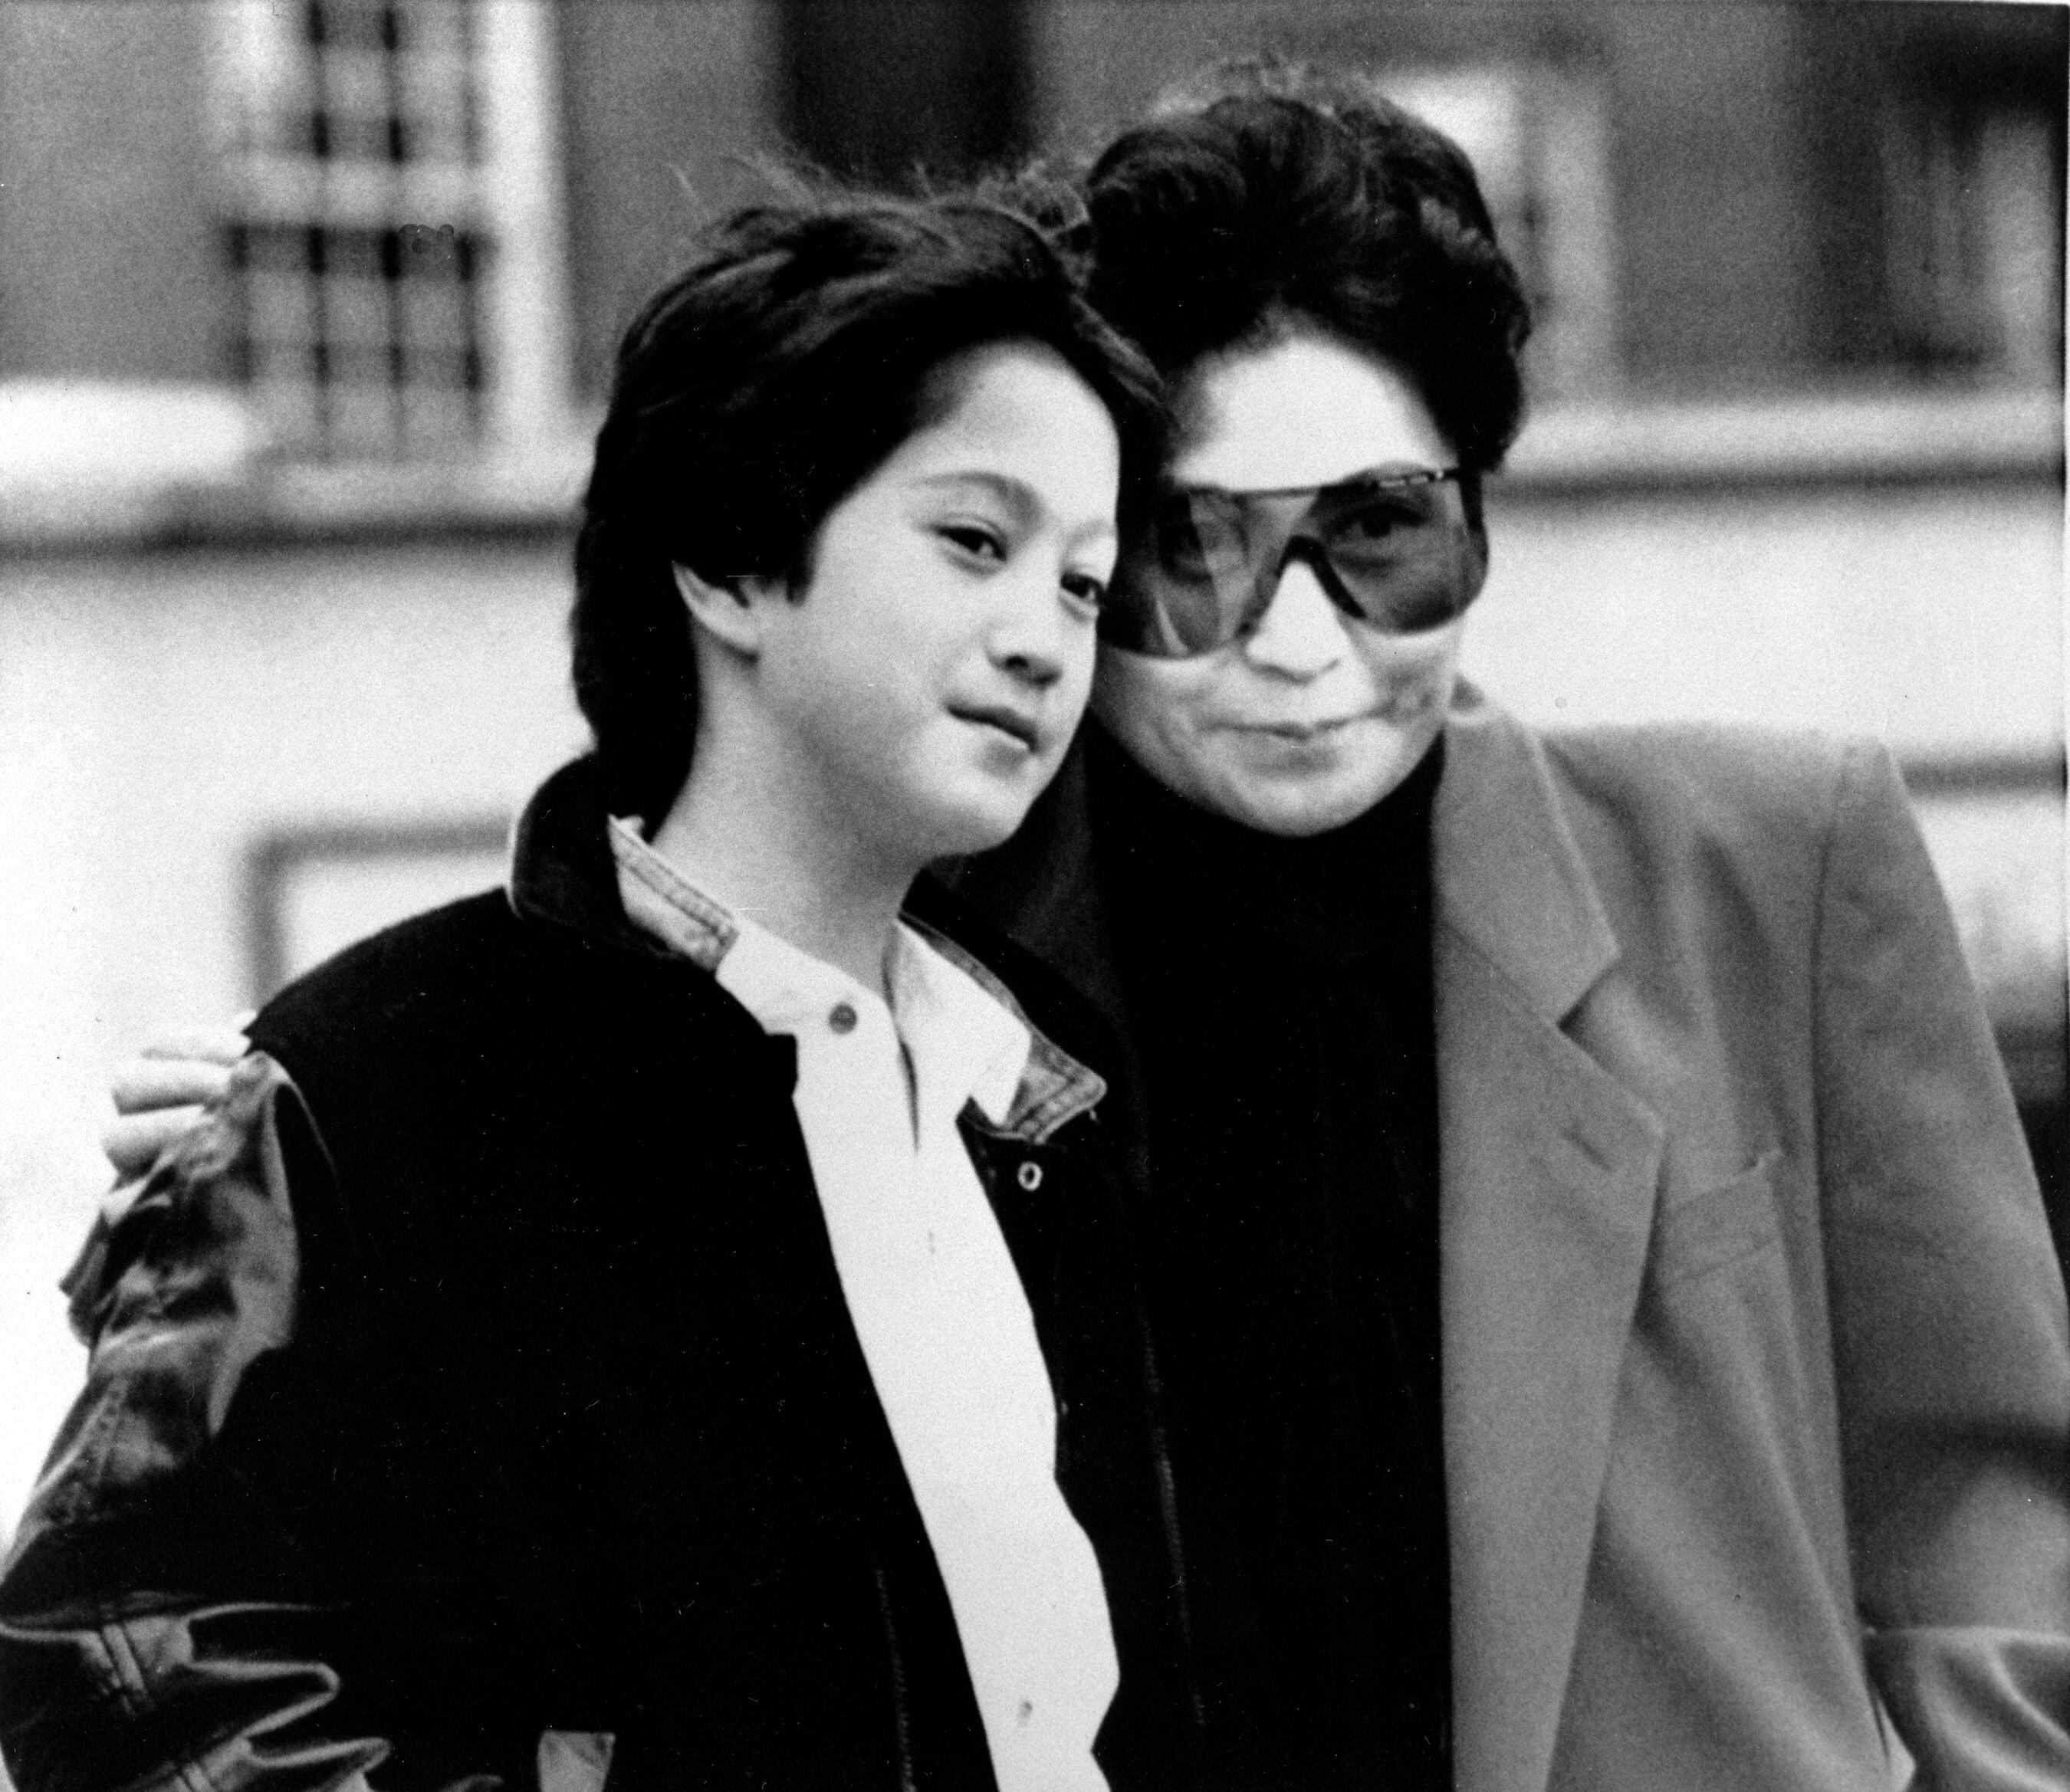 ARCHIVO -  Yoko Ono, viuda de John Lennon y su hijo Sean, de 10 años, en Londres el 20 de marzo de 1986. El álbum "Gimme Some Truth" con 36 canciones de Lennon fue lanzado el 9 de octubre de 2020 para celebrar el cumpleaños 80 del músico. (Foto AP/Richard Price, archivo)